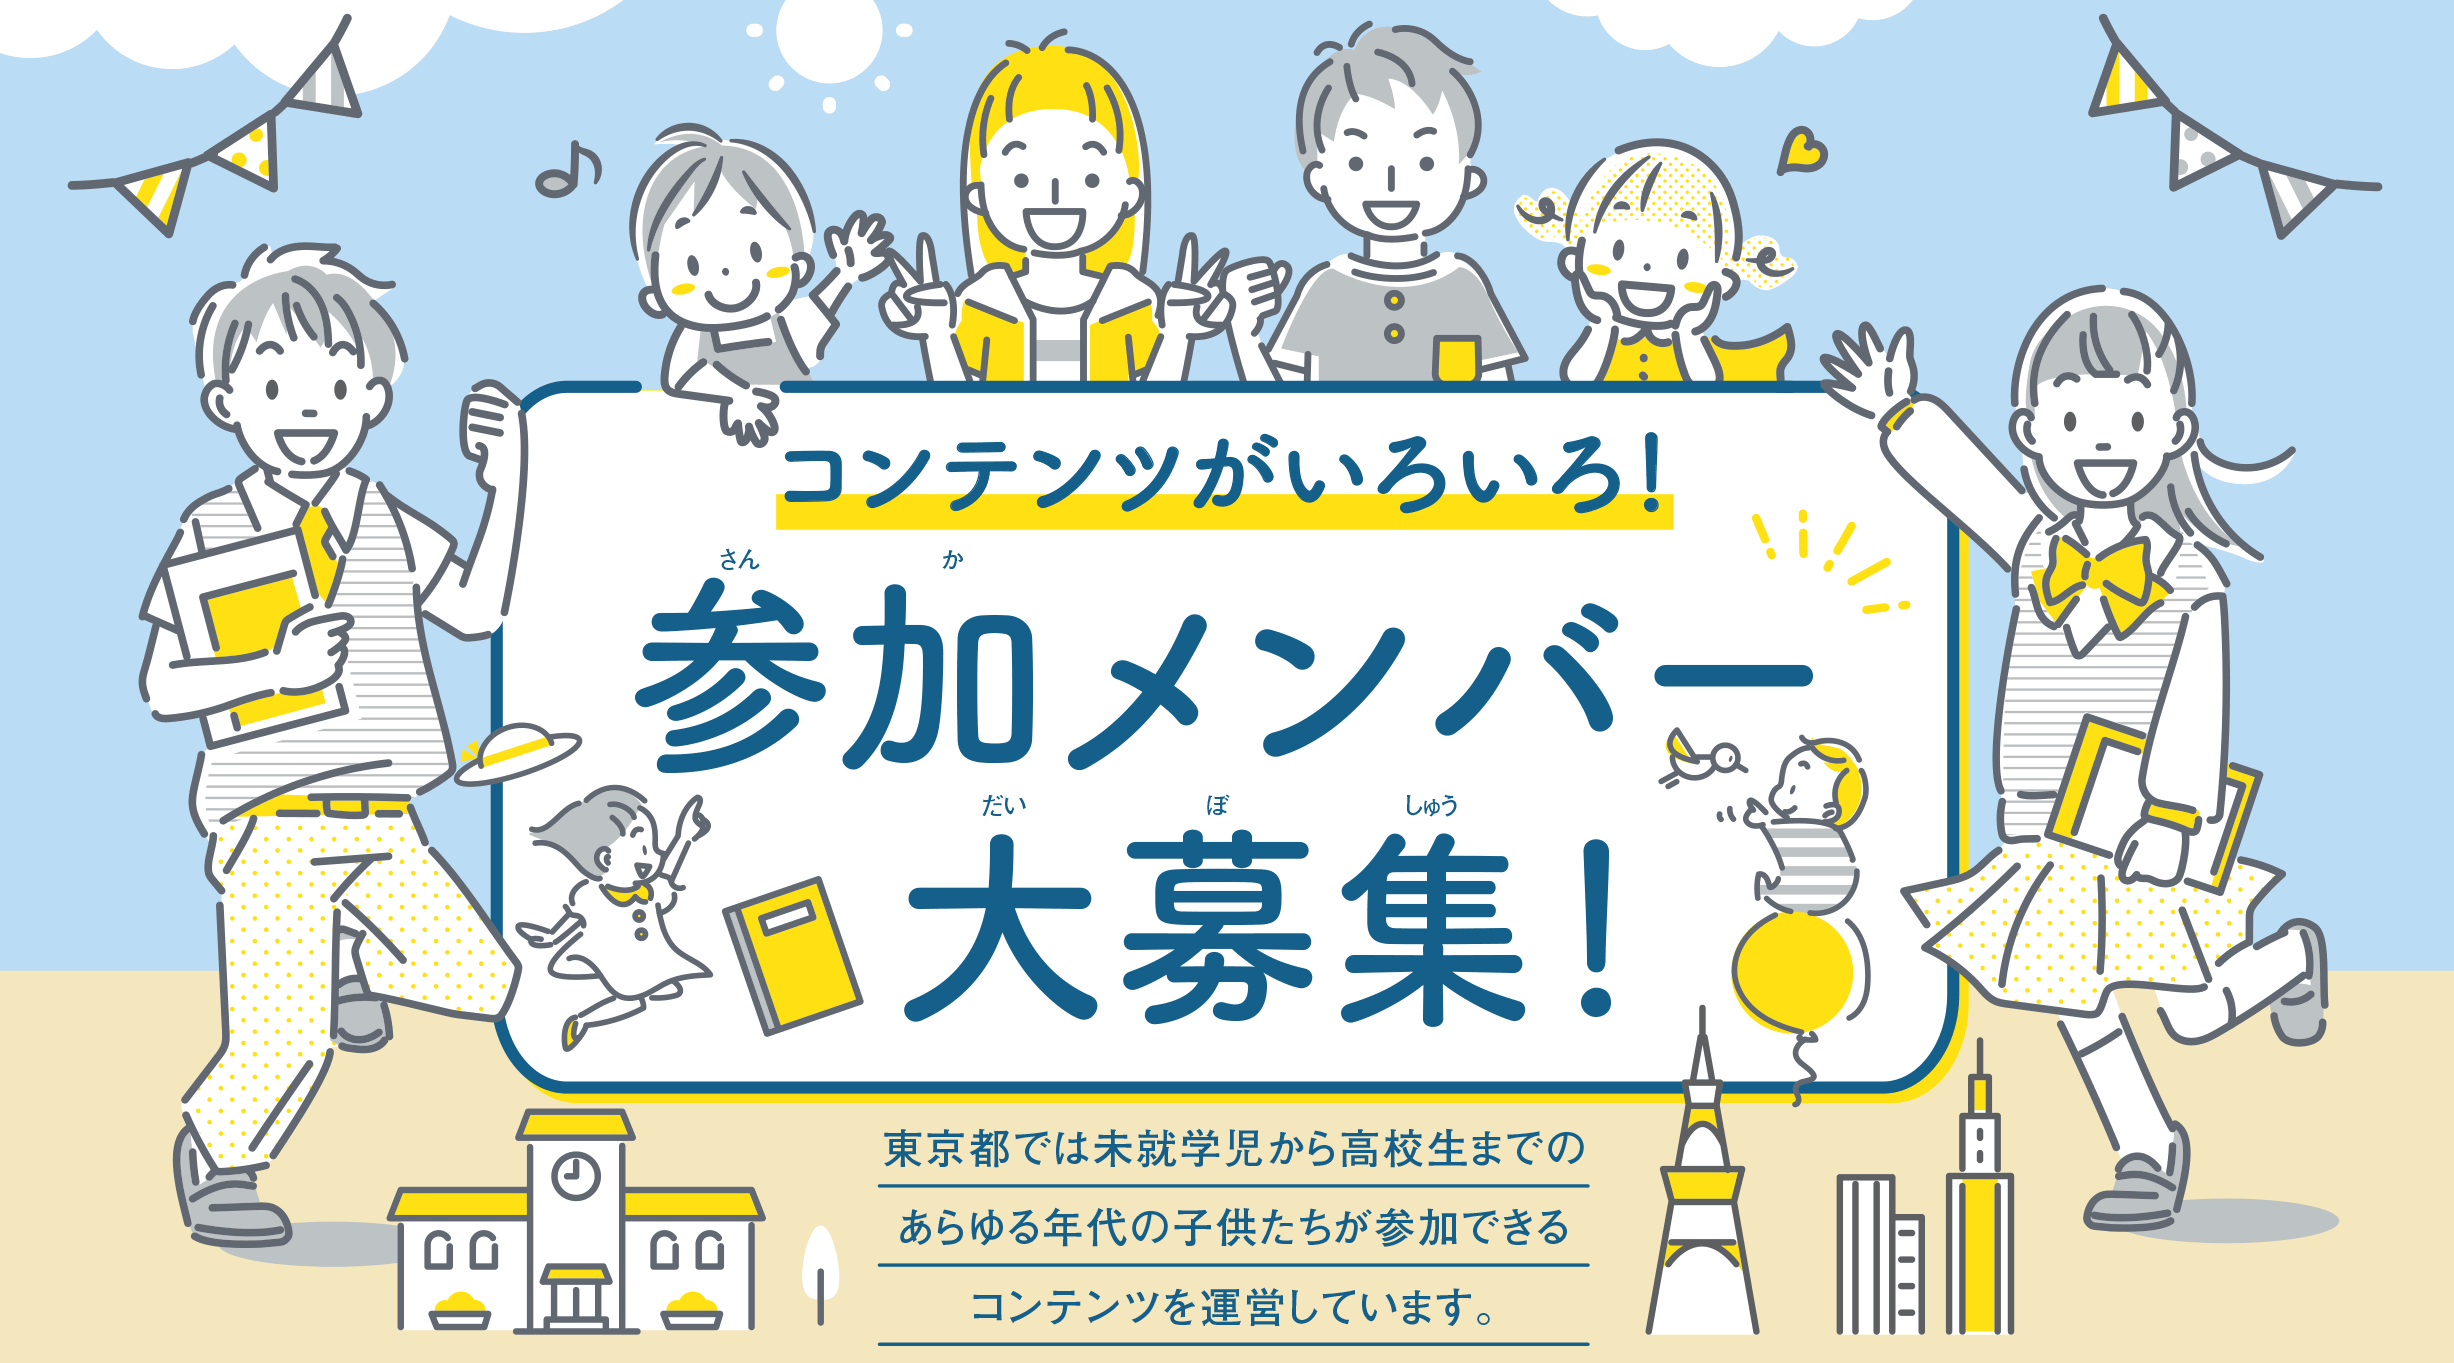 コンテンツがいろいろ！参加メンバー大募集！東京都では未就学児から高校生までのあらゆる年代の子供たちが参加できるコンテンツを運営しています。